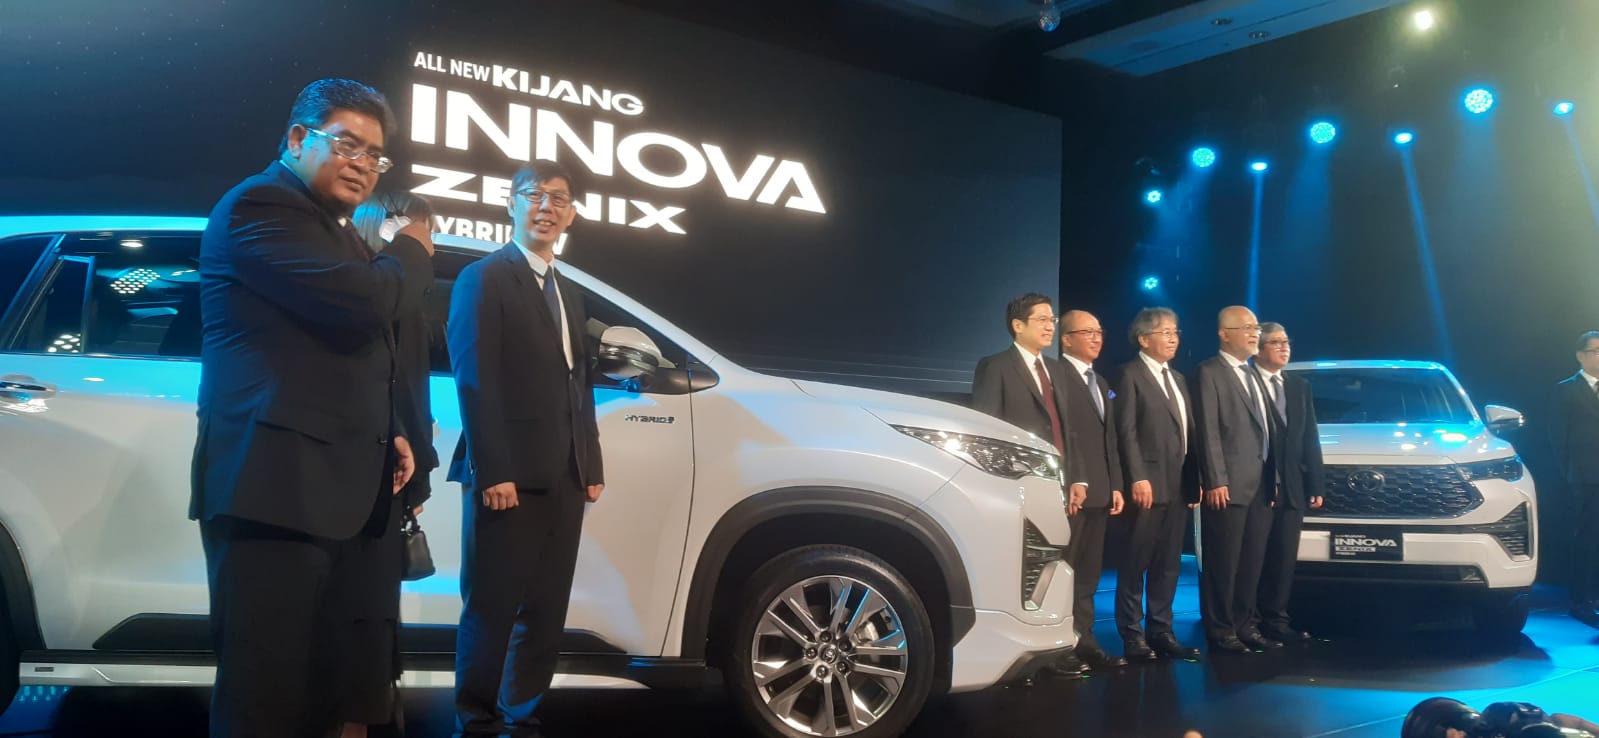 Toyota Kijang Innova Zenix Rilis Global di Indonesia dalam 2 Varian, Harga Mulai Rp419 Juta